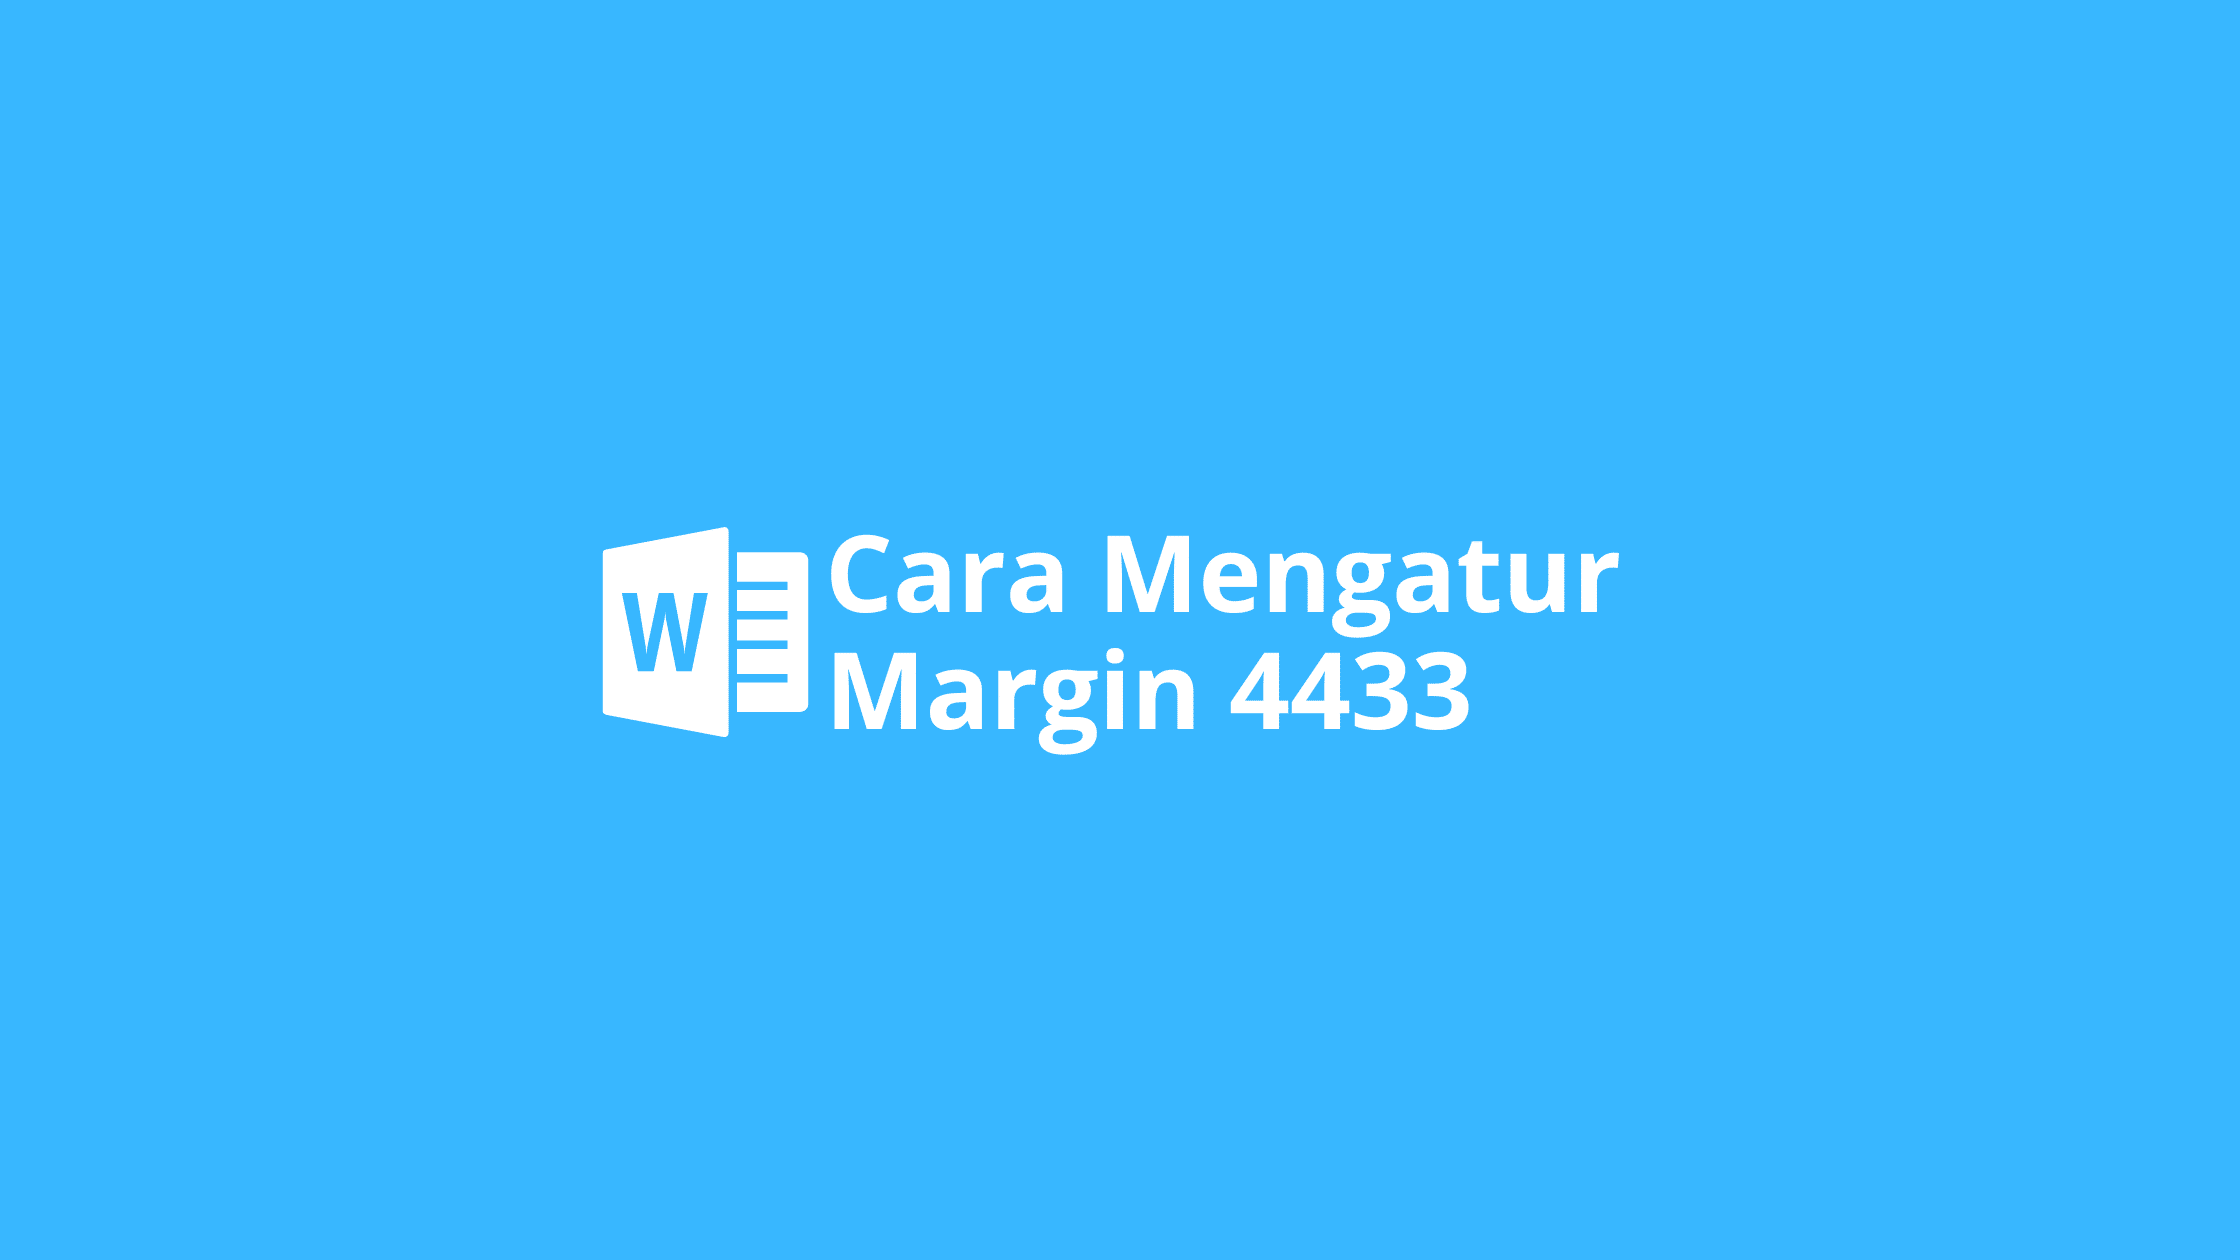 margin 4433